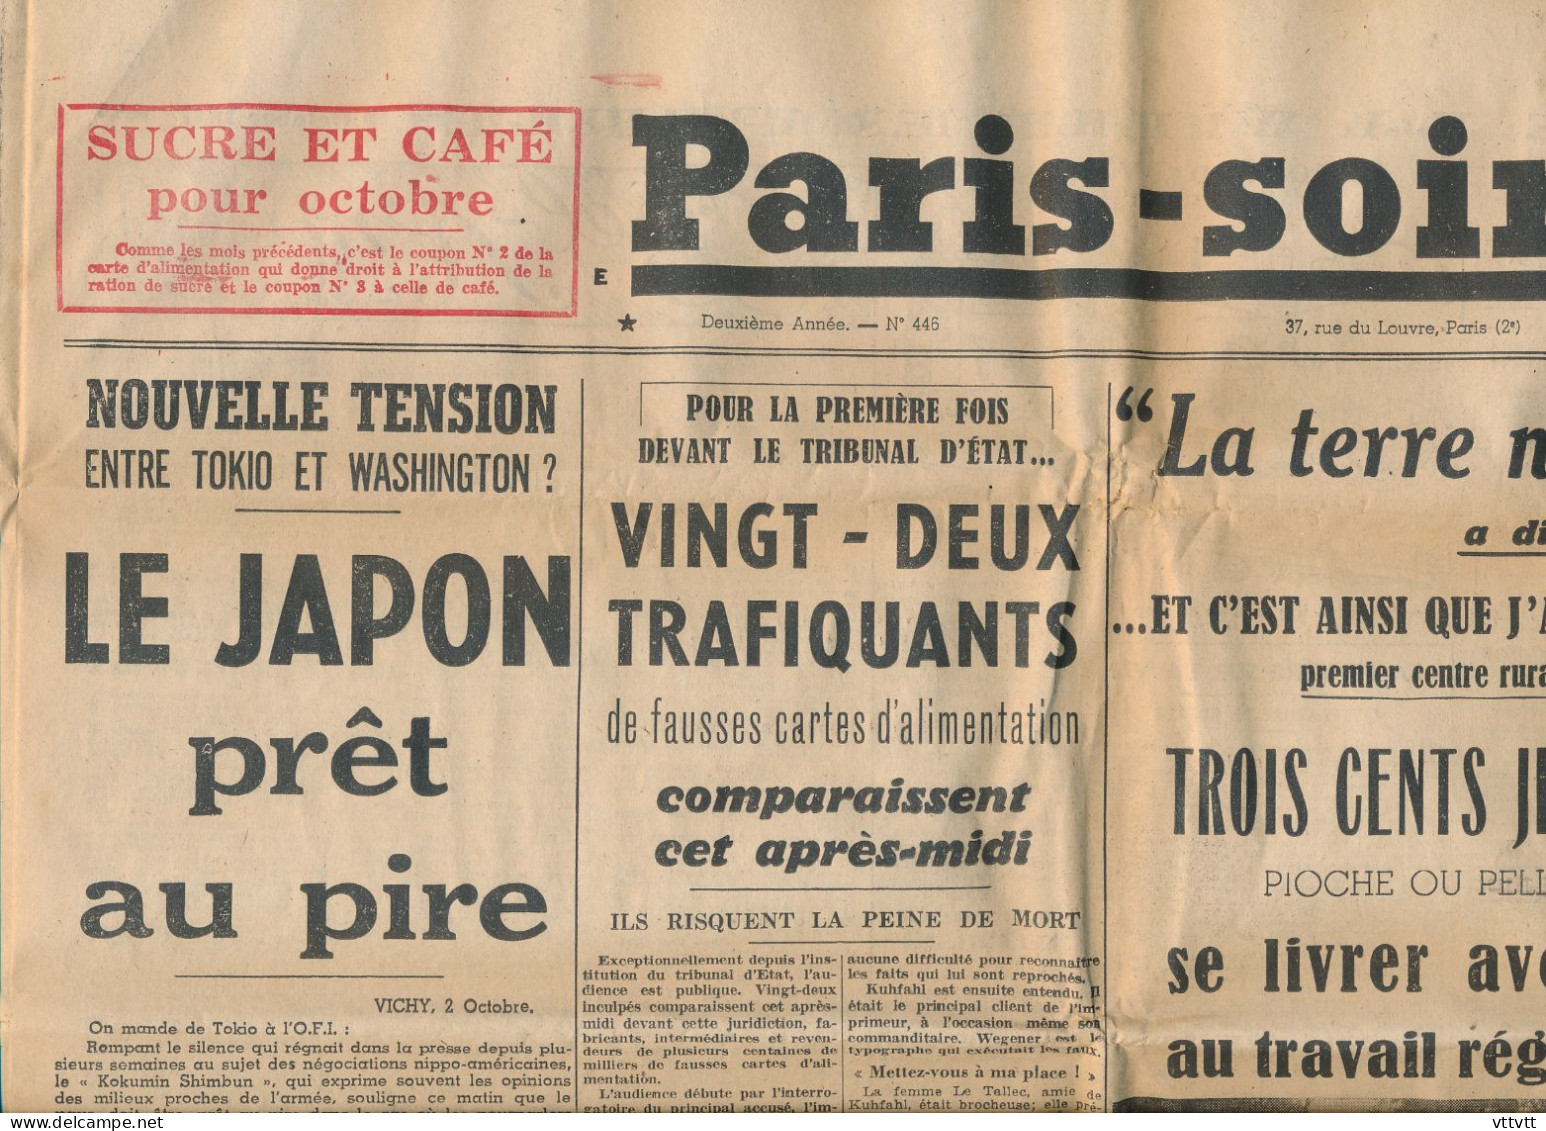 PARIS-SOIR, Vendredi 3 Octobre 1941, N° 446, Brevannes, Lisieux, Japon, Trafiquants, Cassy, Salon D'Automne, Maréchal... - Algemene Informatie